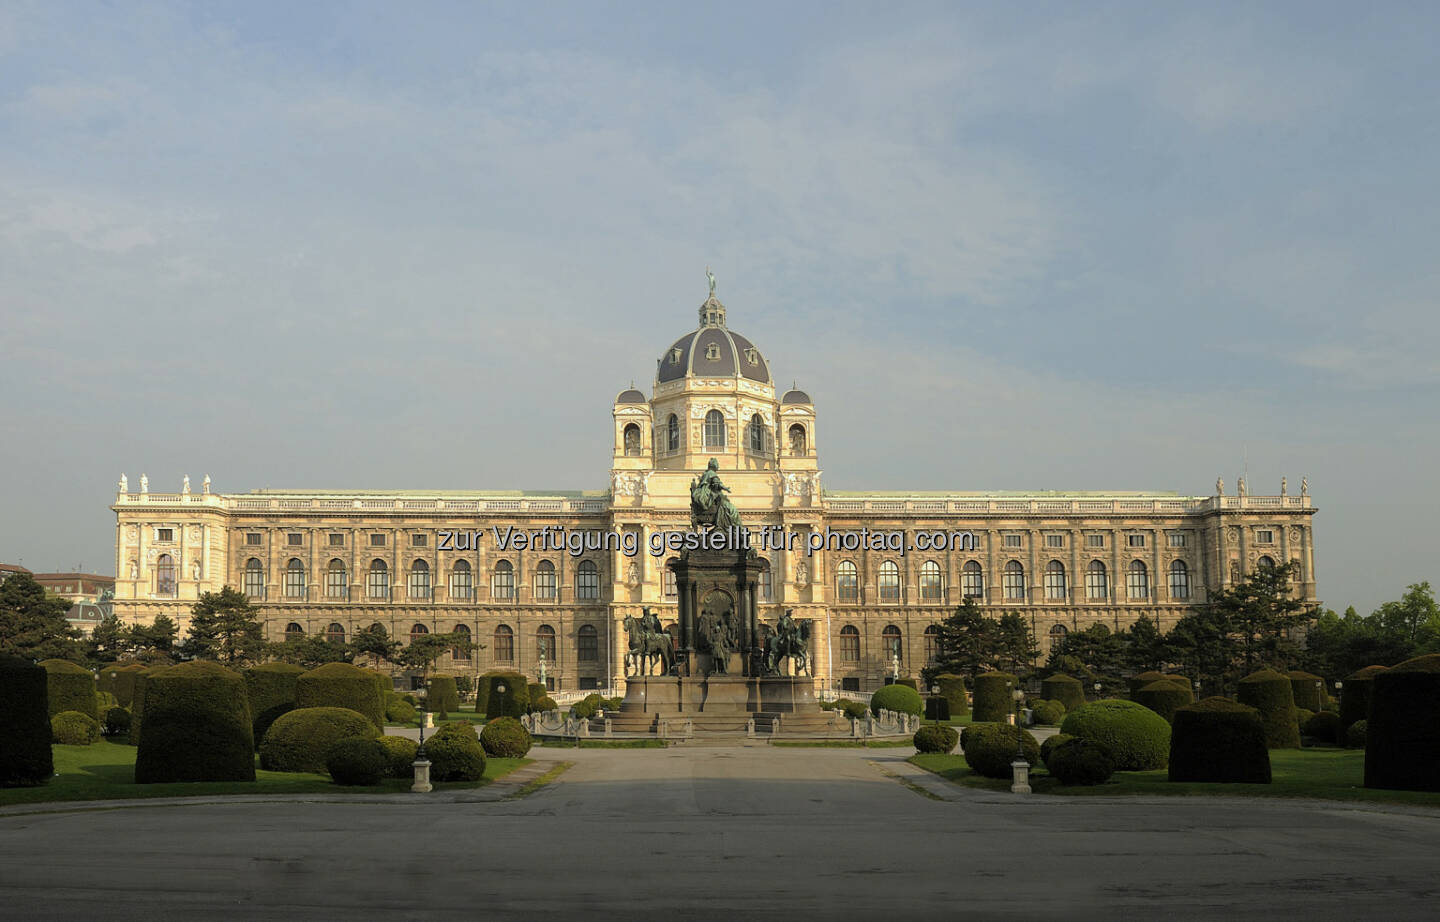 Naturhistorisches Museum: Am 10. August vor genau 125 Jahren - am 10.08.1889 - wurde das Naturhistorische Musem in Wien eröffnet (c) Kurt Kracher